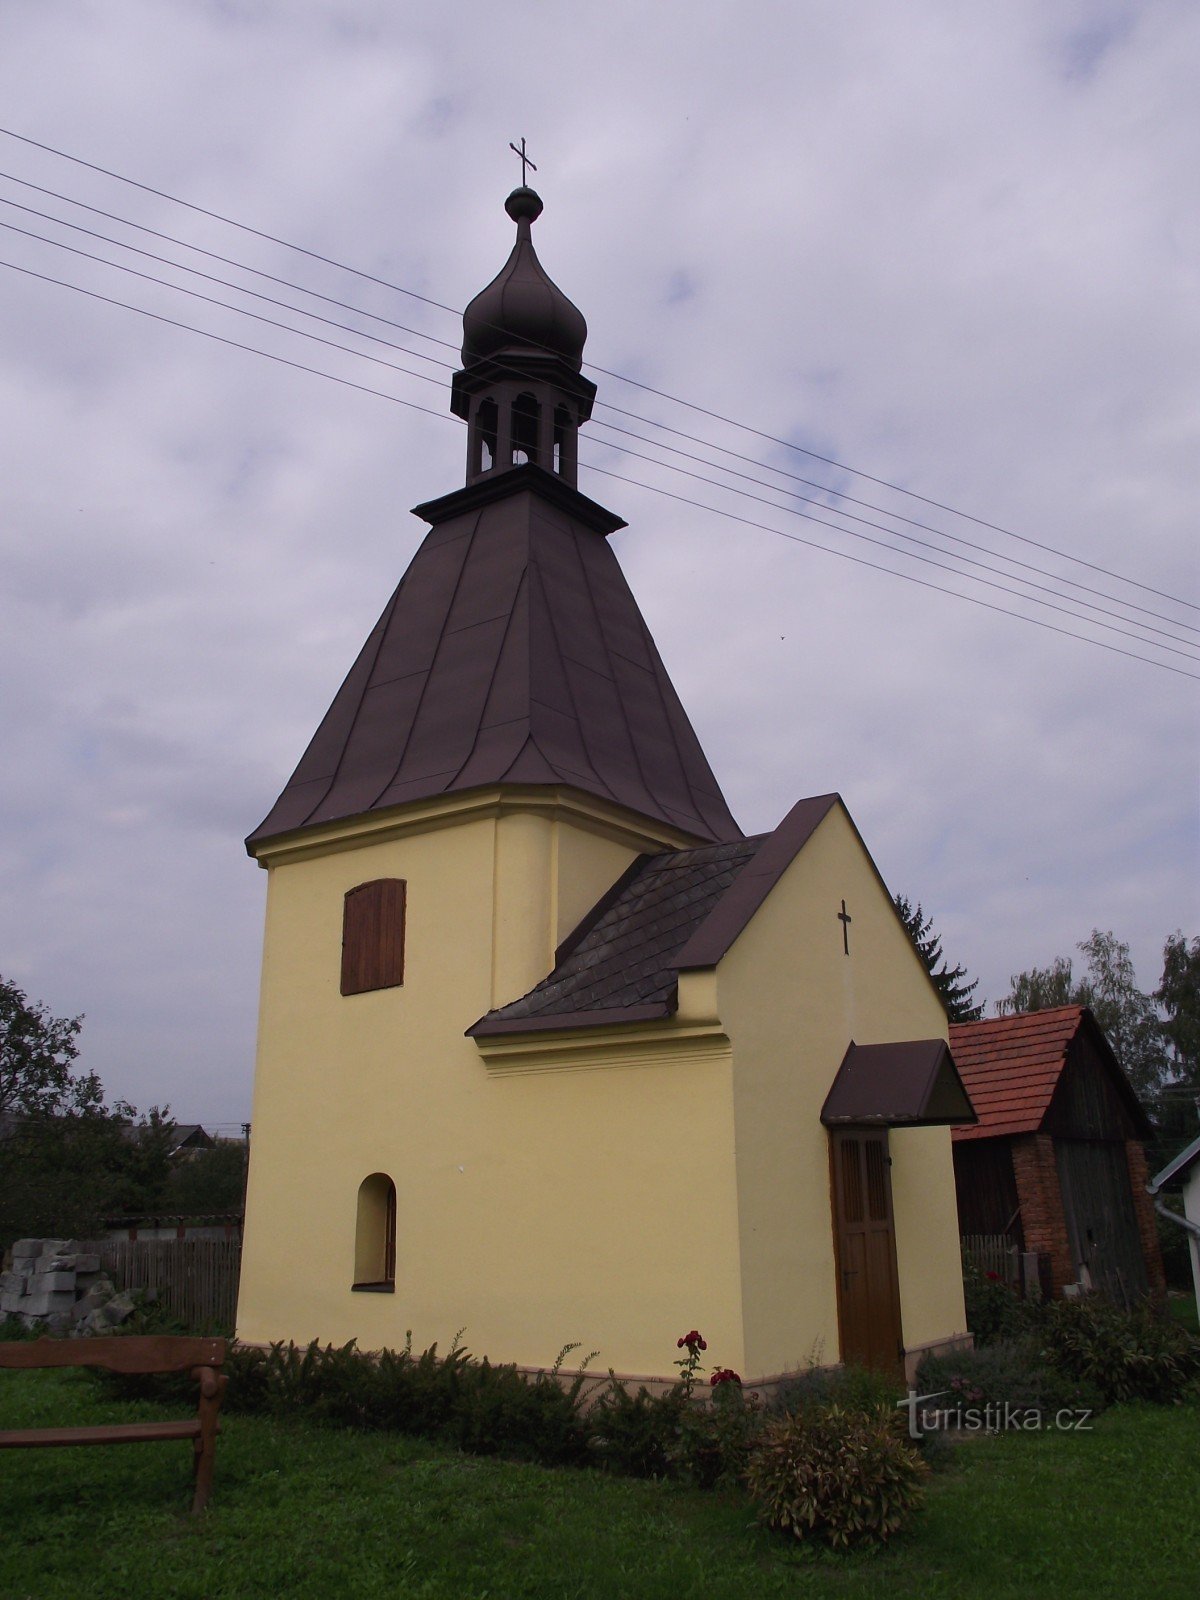 capela Sf. Antonín Paduánský în Nová Hradečná